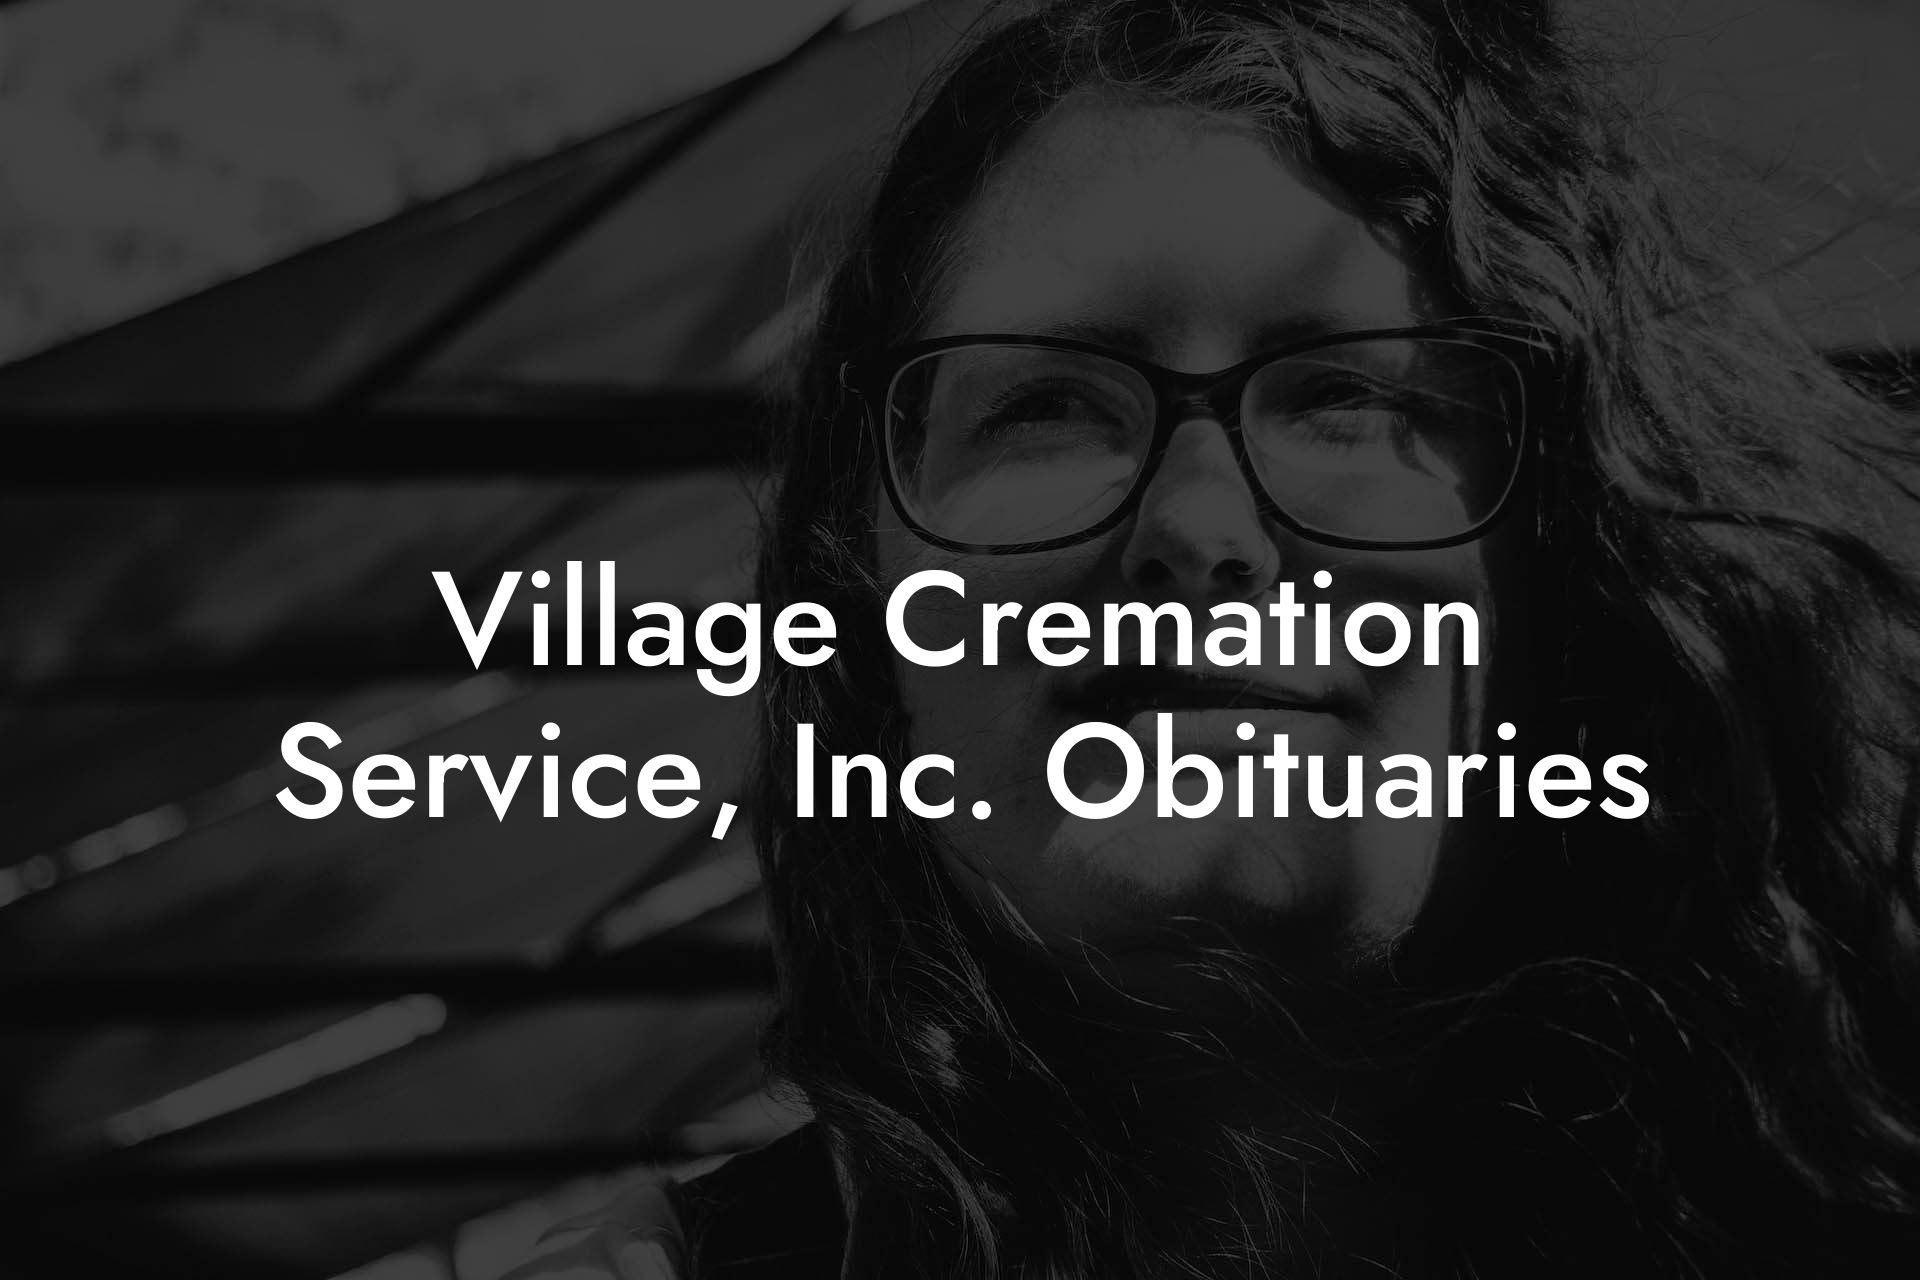 Village Cremation Service, Inc. Obituaries